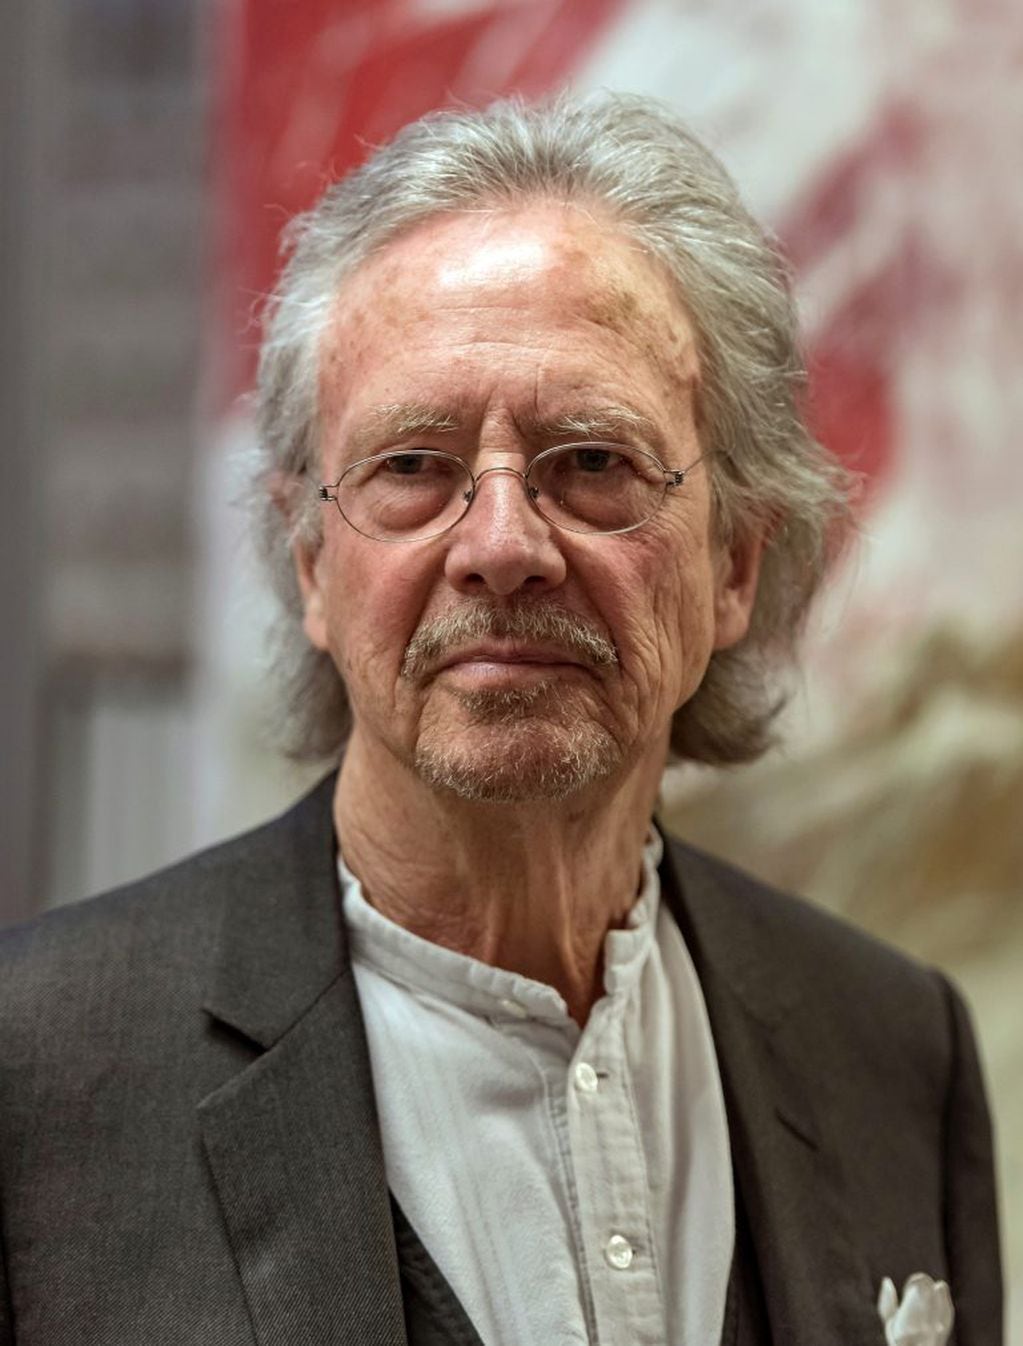 Imagen archivo. El austríaco Peter Handke fue premiado con el Nobel de Literatura 2019. Foto: Daniel Maurer/DPA.